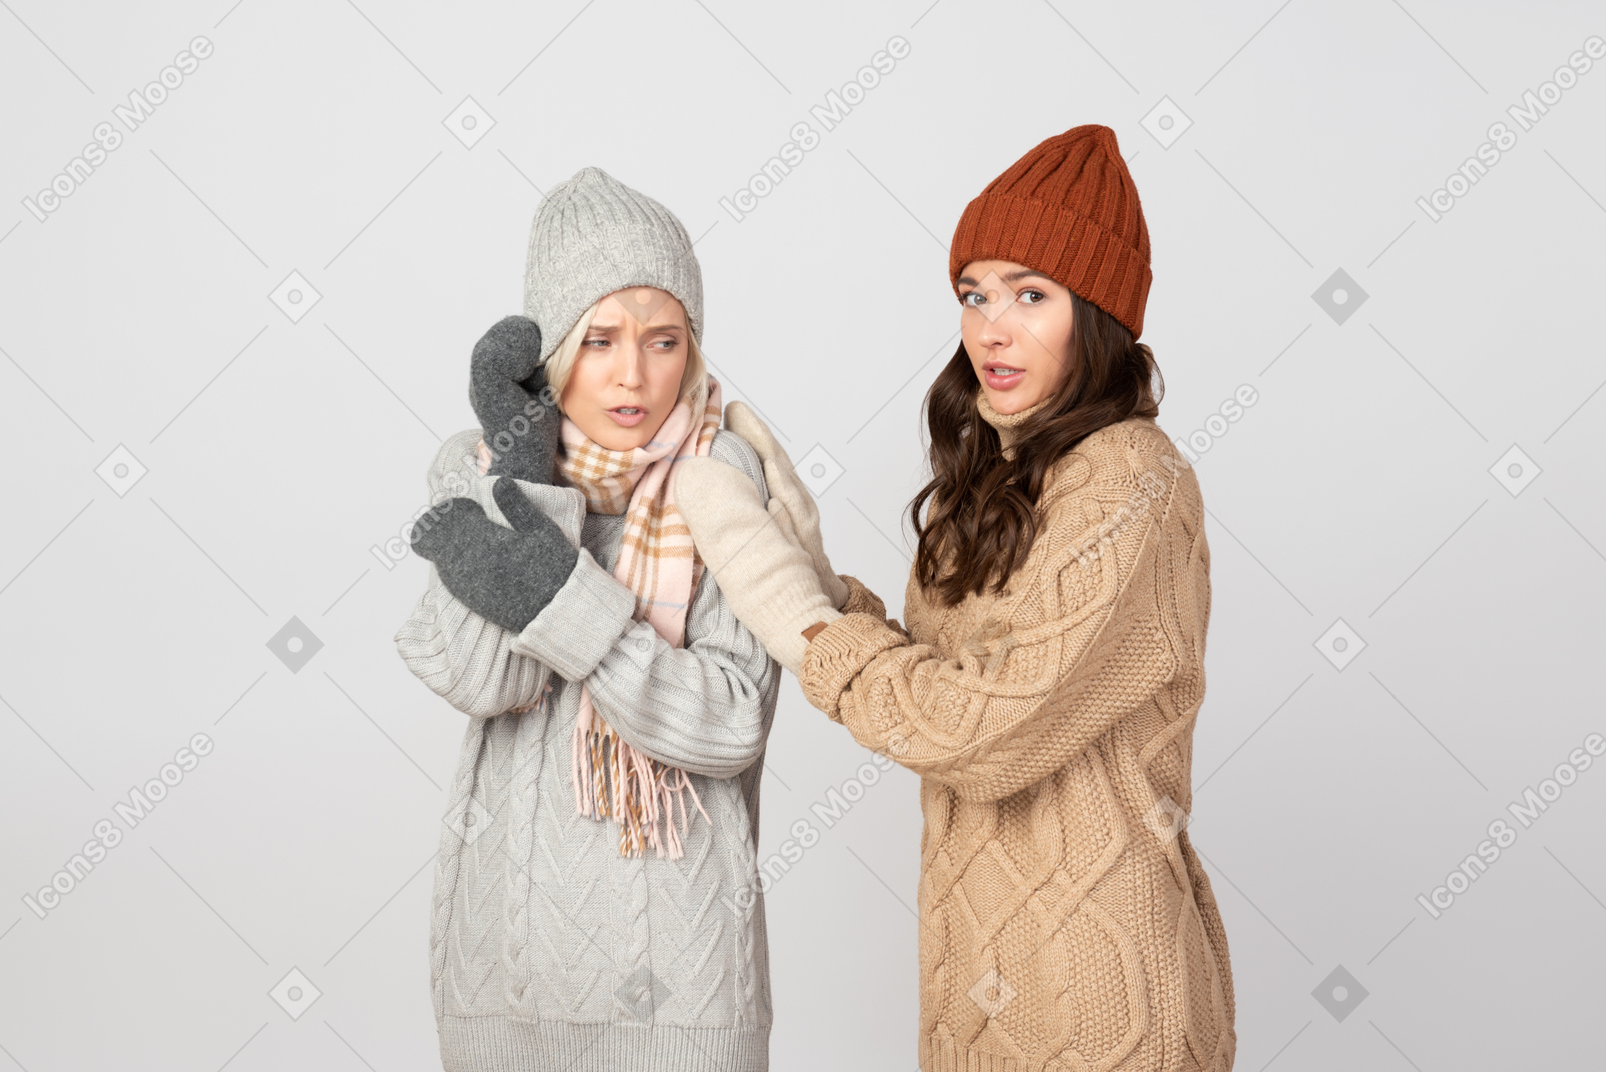 Hai notato quanto siamo freddi?